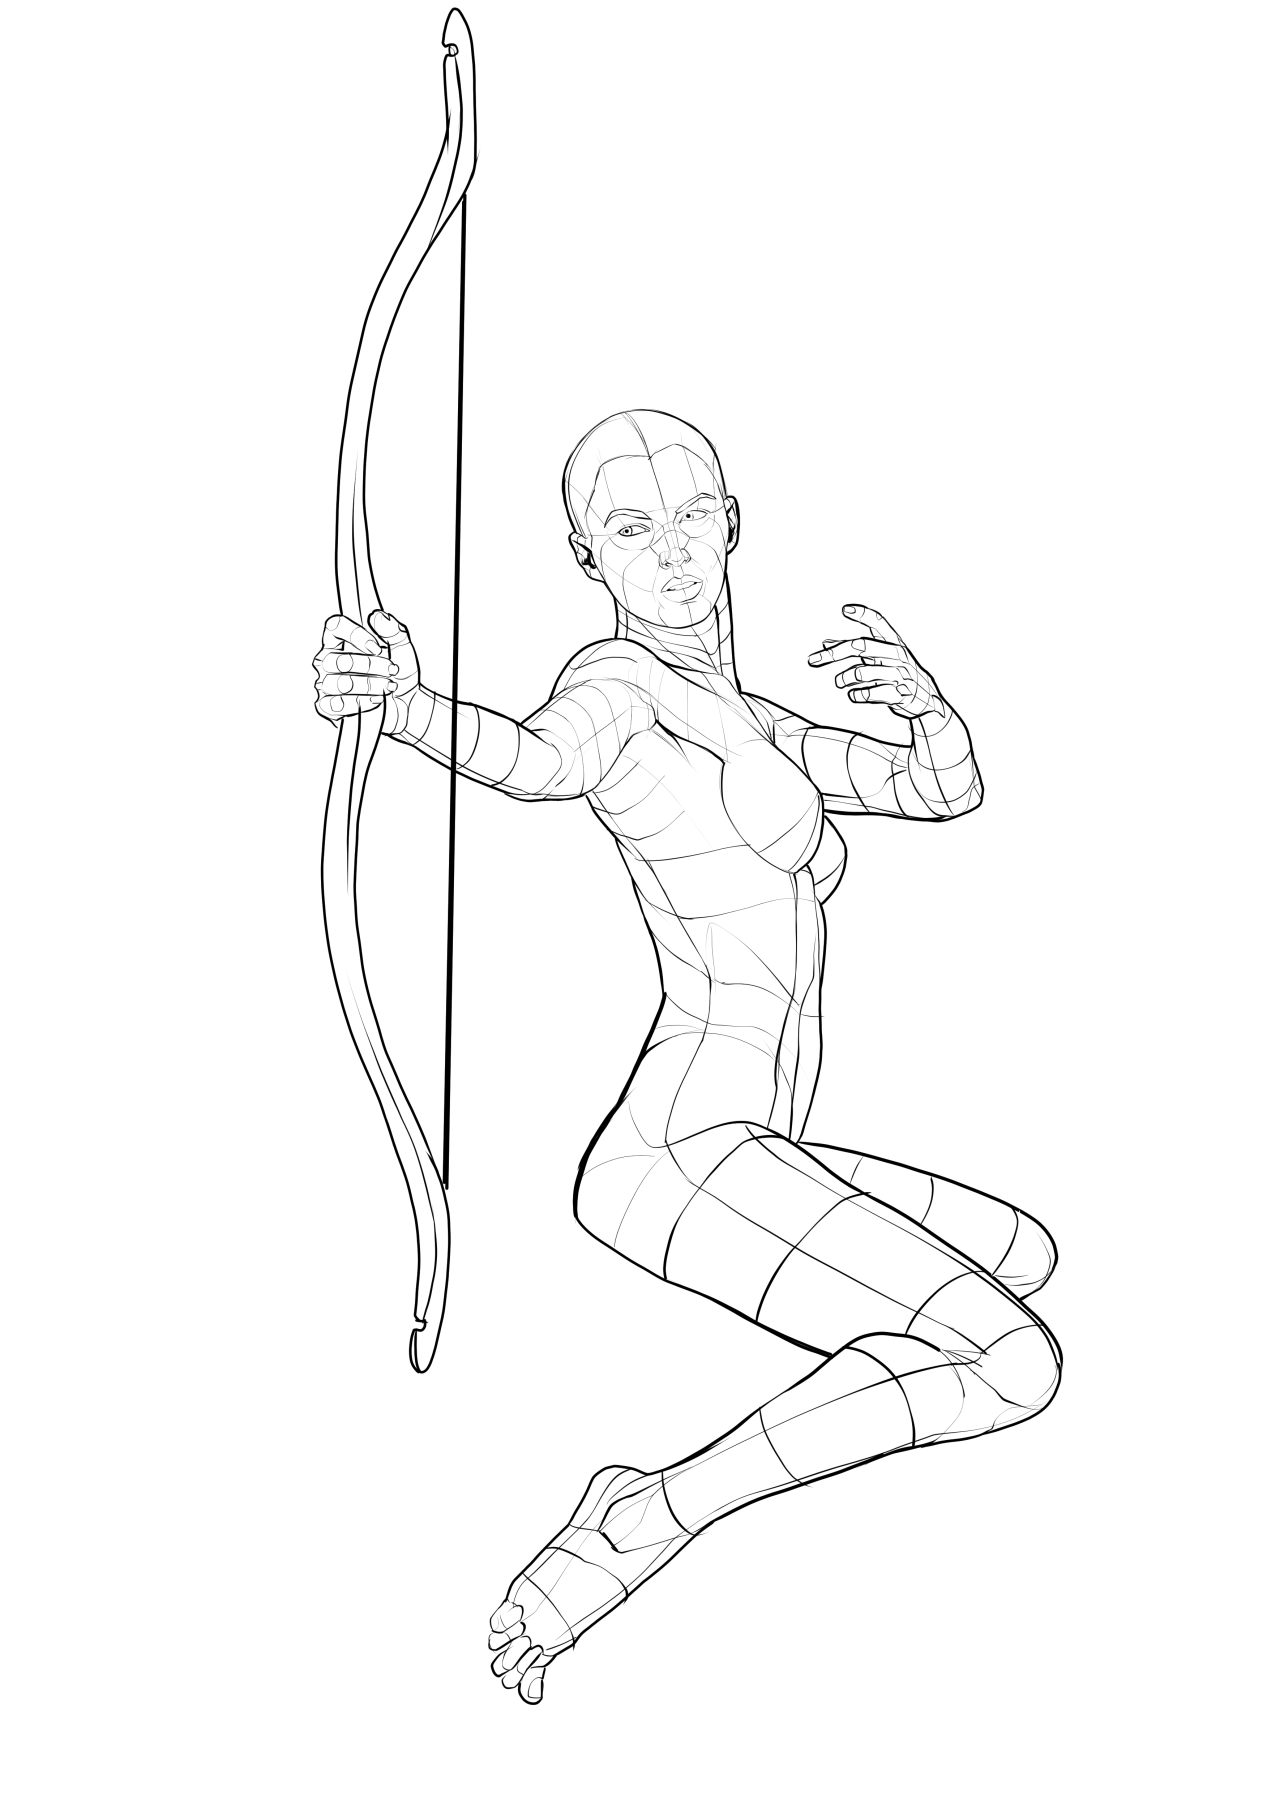 Female archer in a dynamic pose on Craiyon